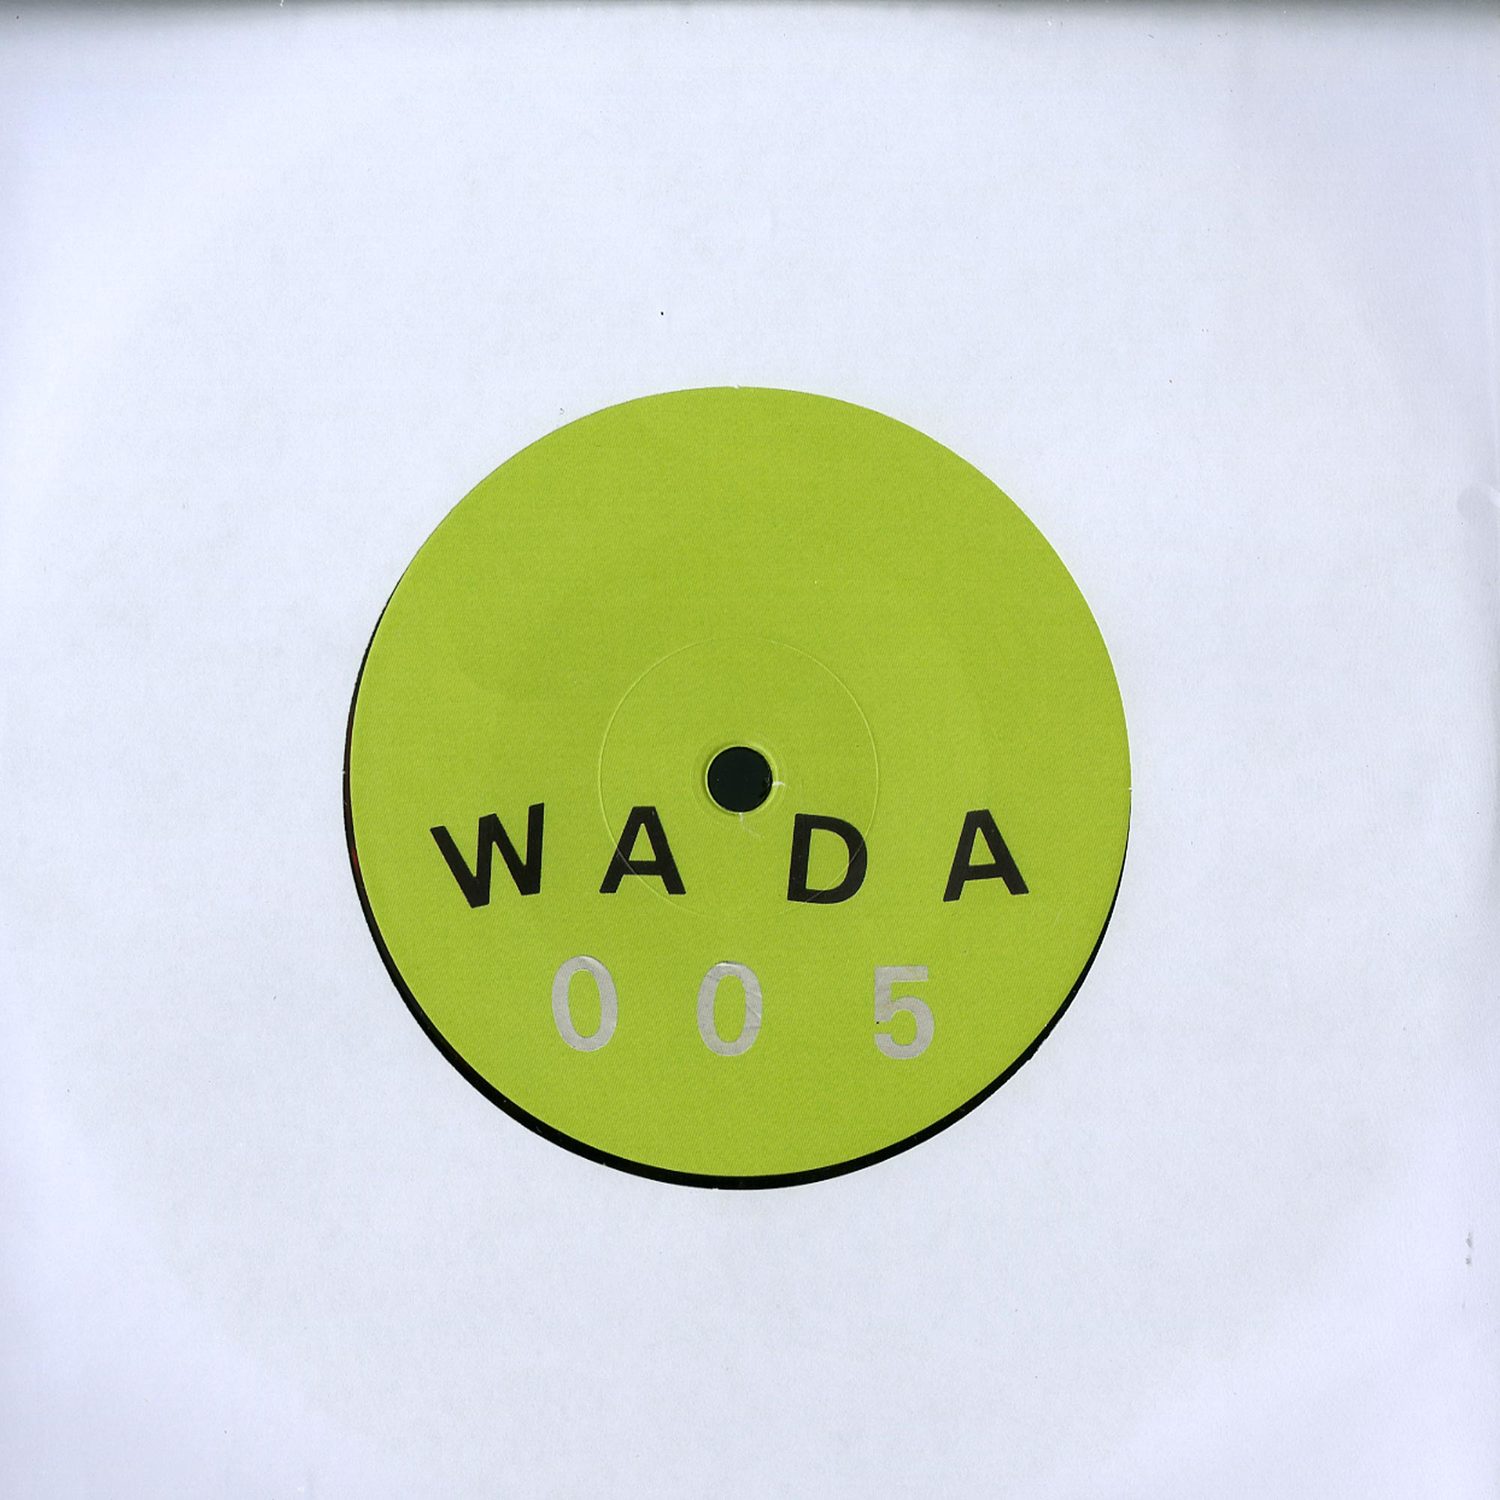 Wada - WADA005 